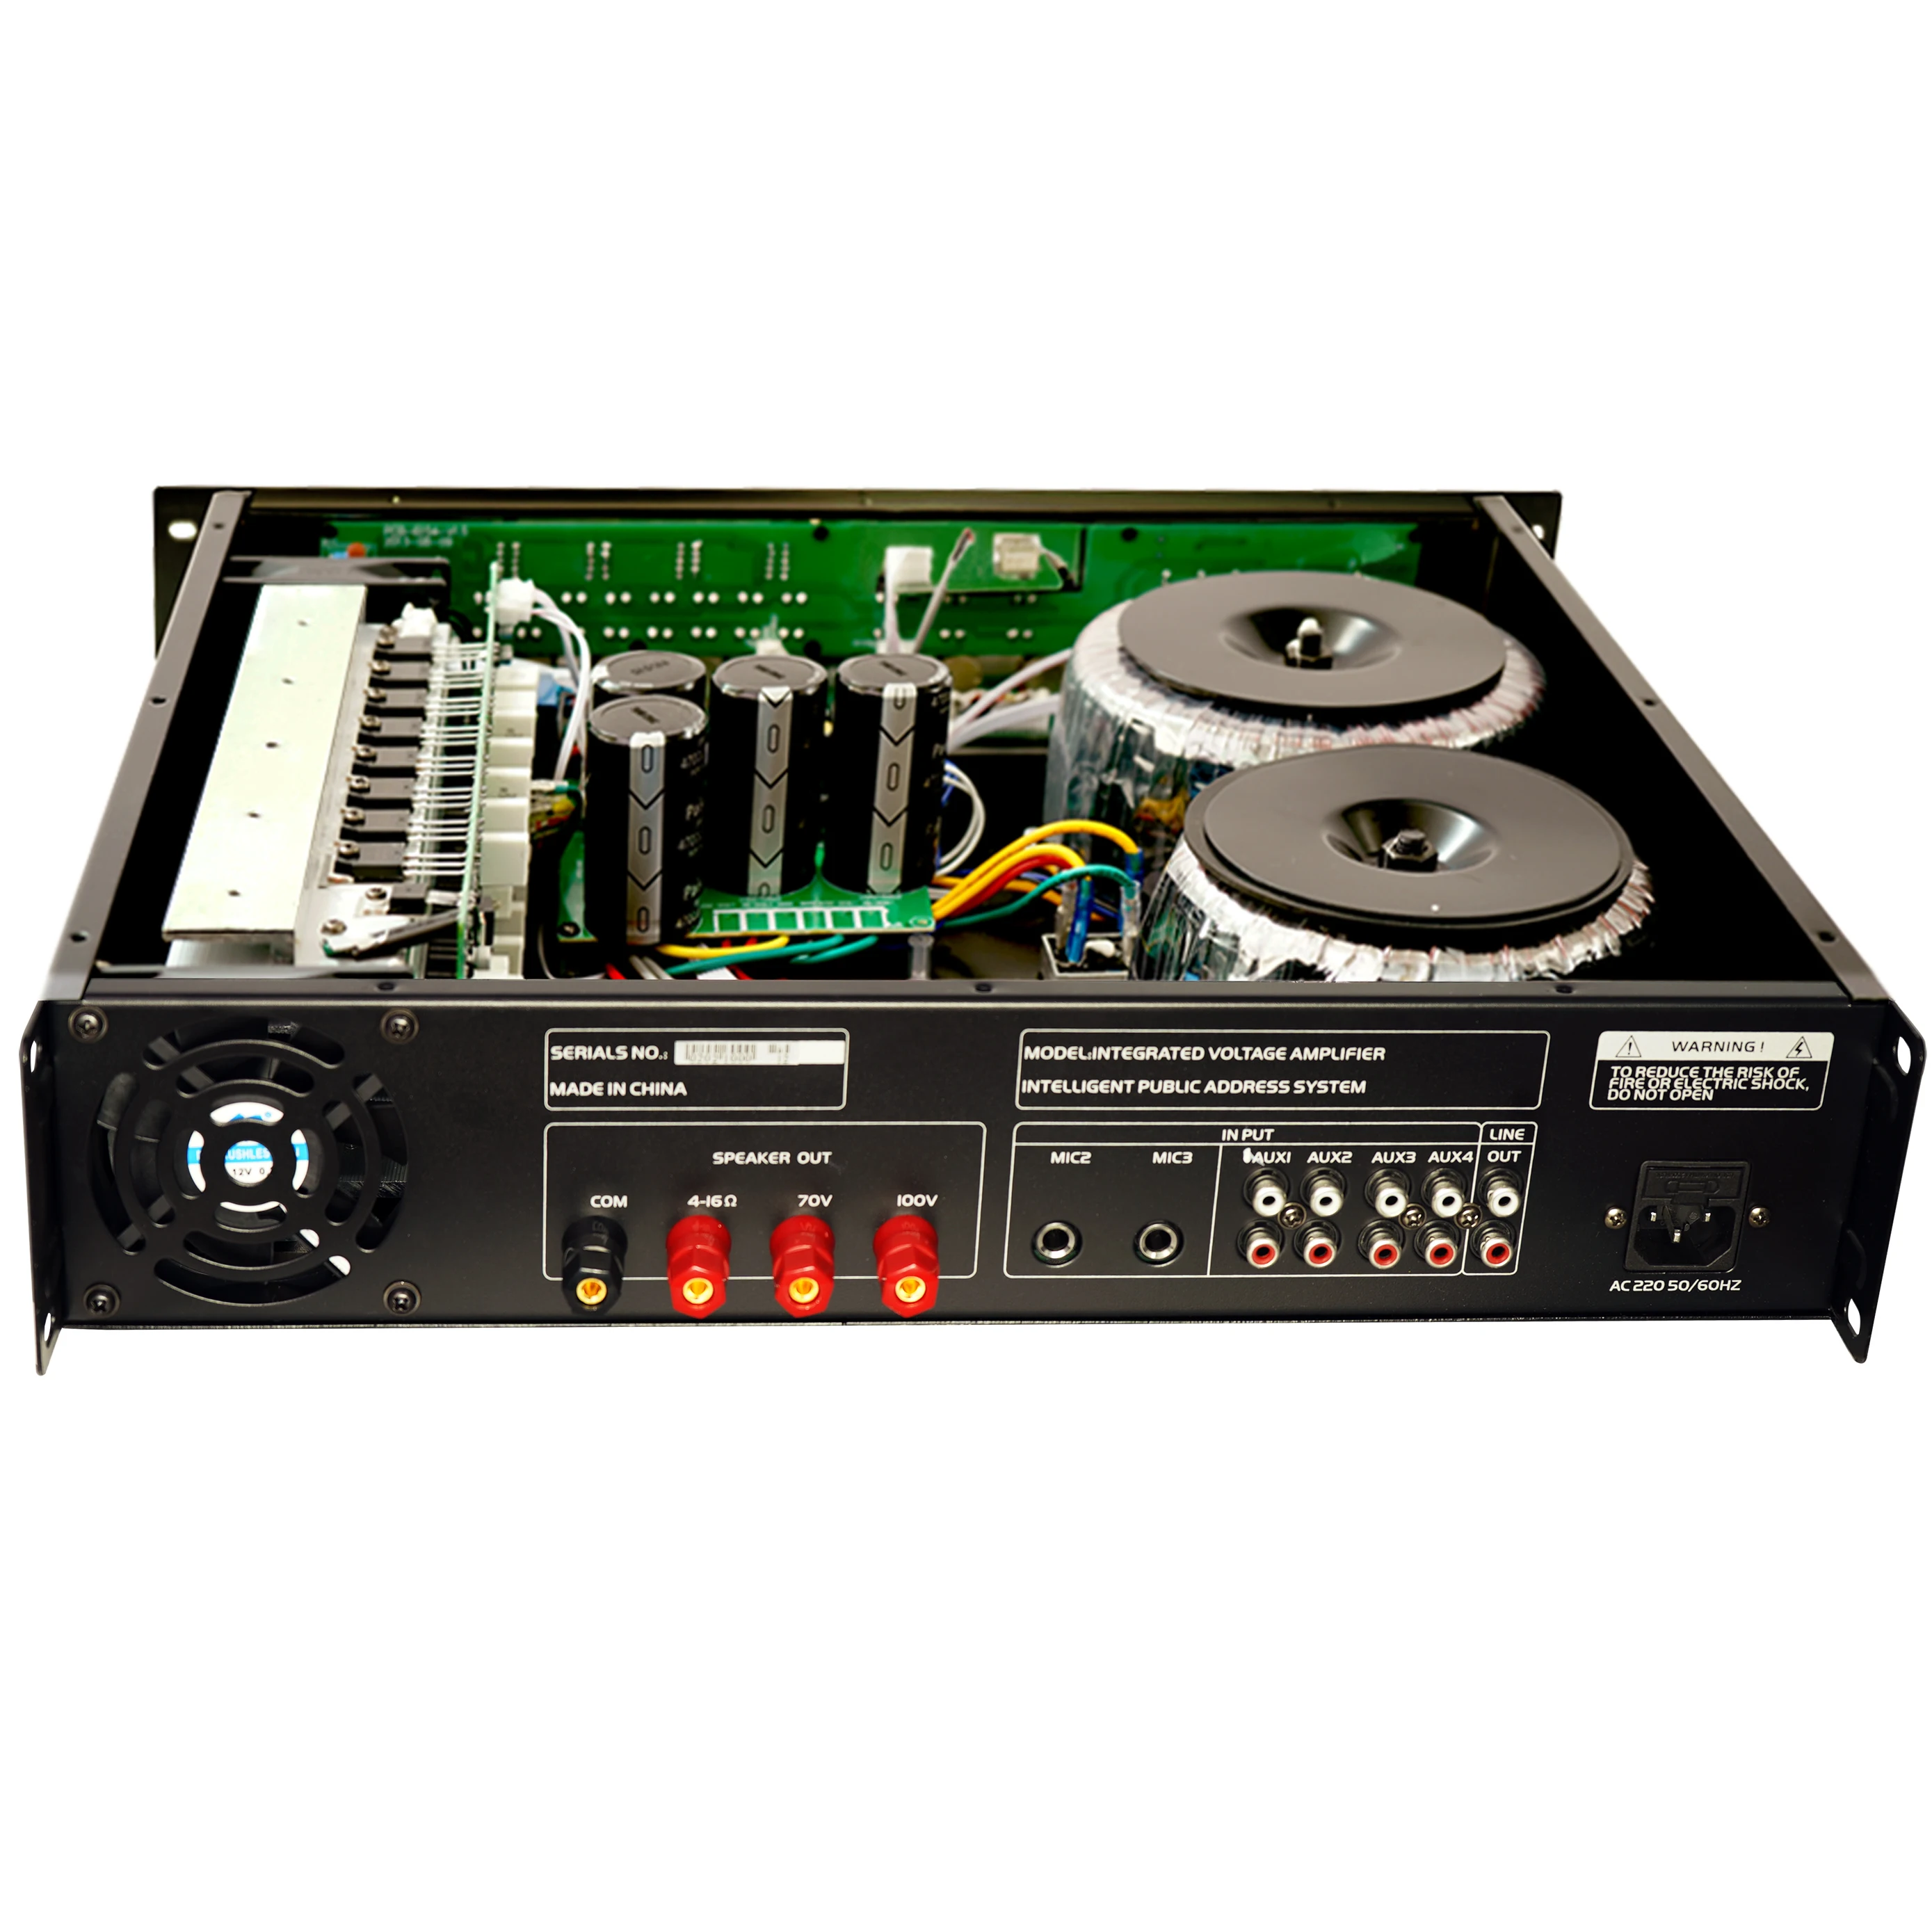 

90W/150W/250W/350W/450W/550W/650W Mixer Audio Voltage Power PA Amplifier